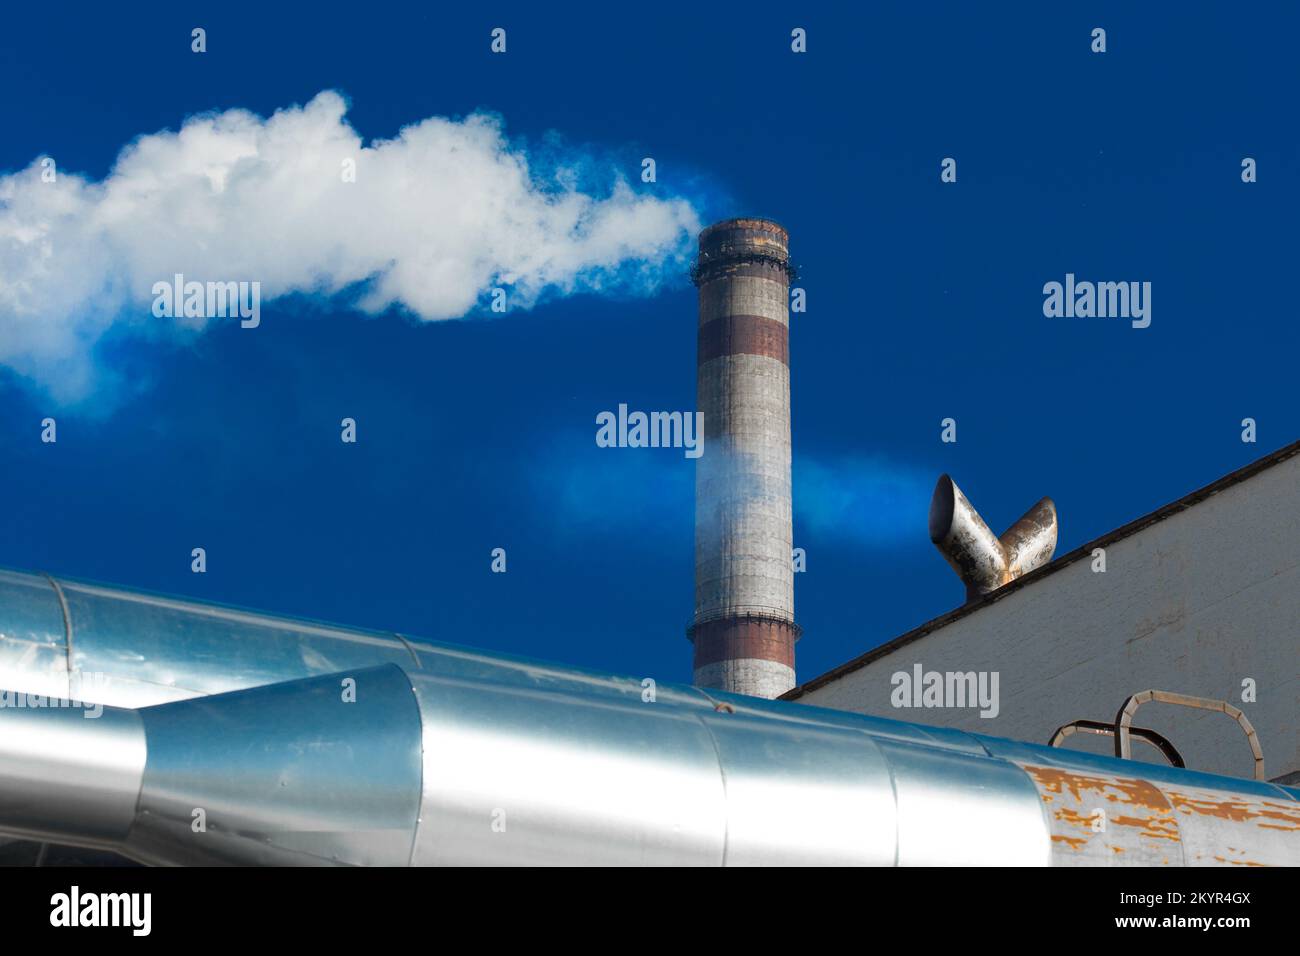 Inquinamento dell'ambiente, dell'aria, dell'atmosfera e dei problemi ambientali. Il tubo dell'impianto industriale emette fumo tossico. Foto Stock